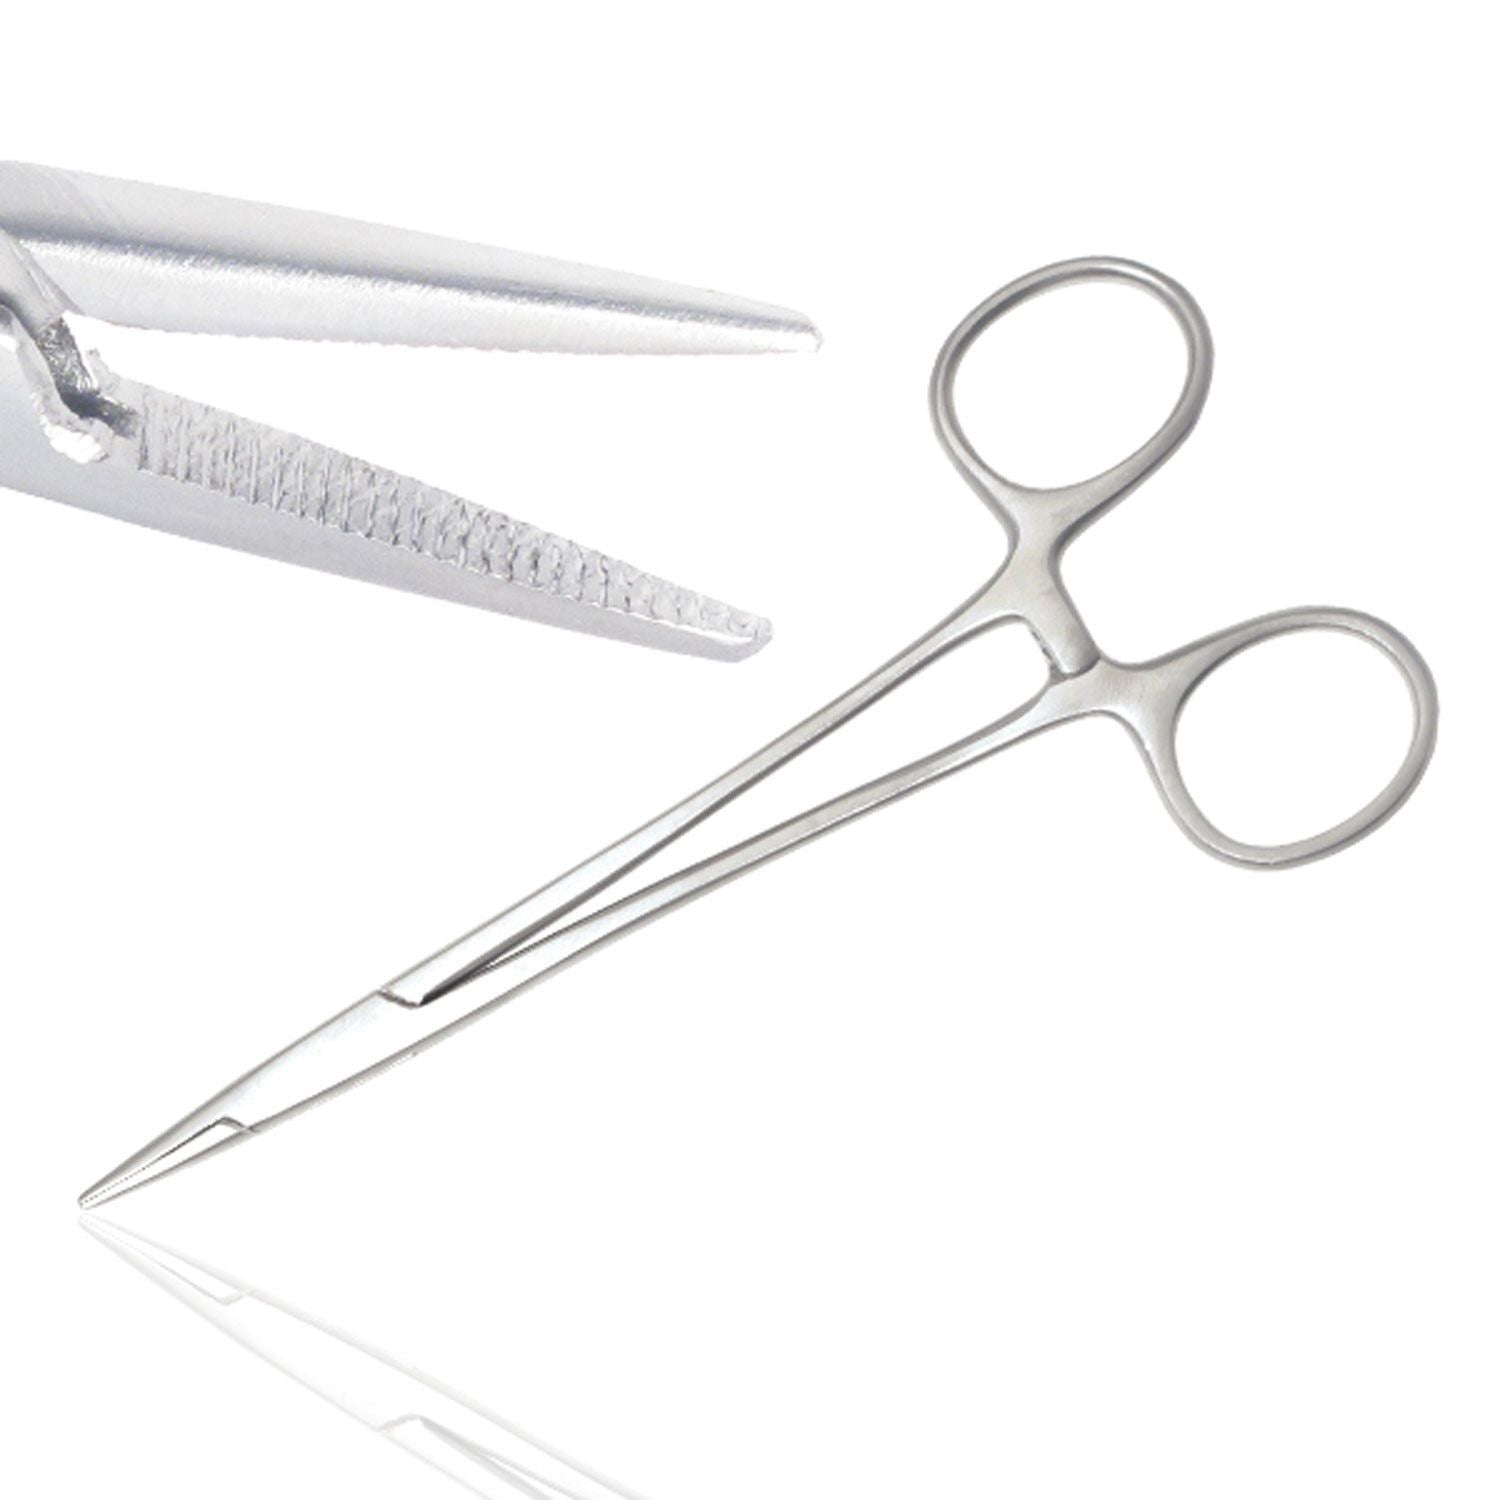 Instramed Lawrence Fine Jaw Needle Holder | Sterile | 15cm